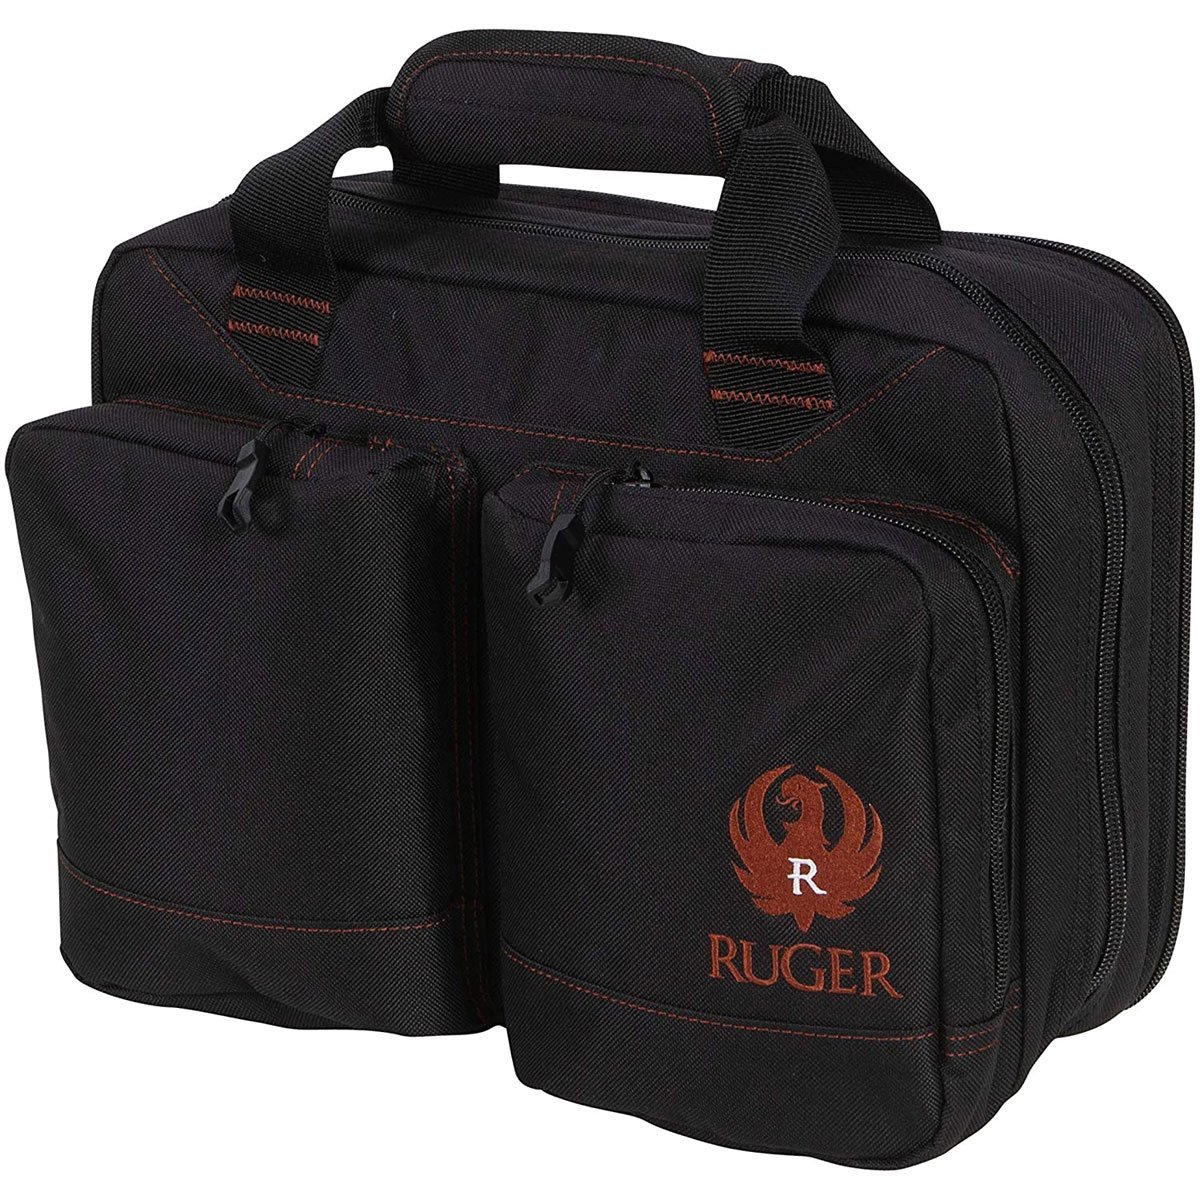 Ruger range bag - Black